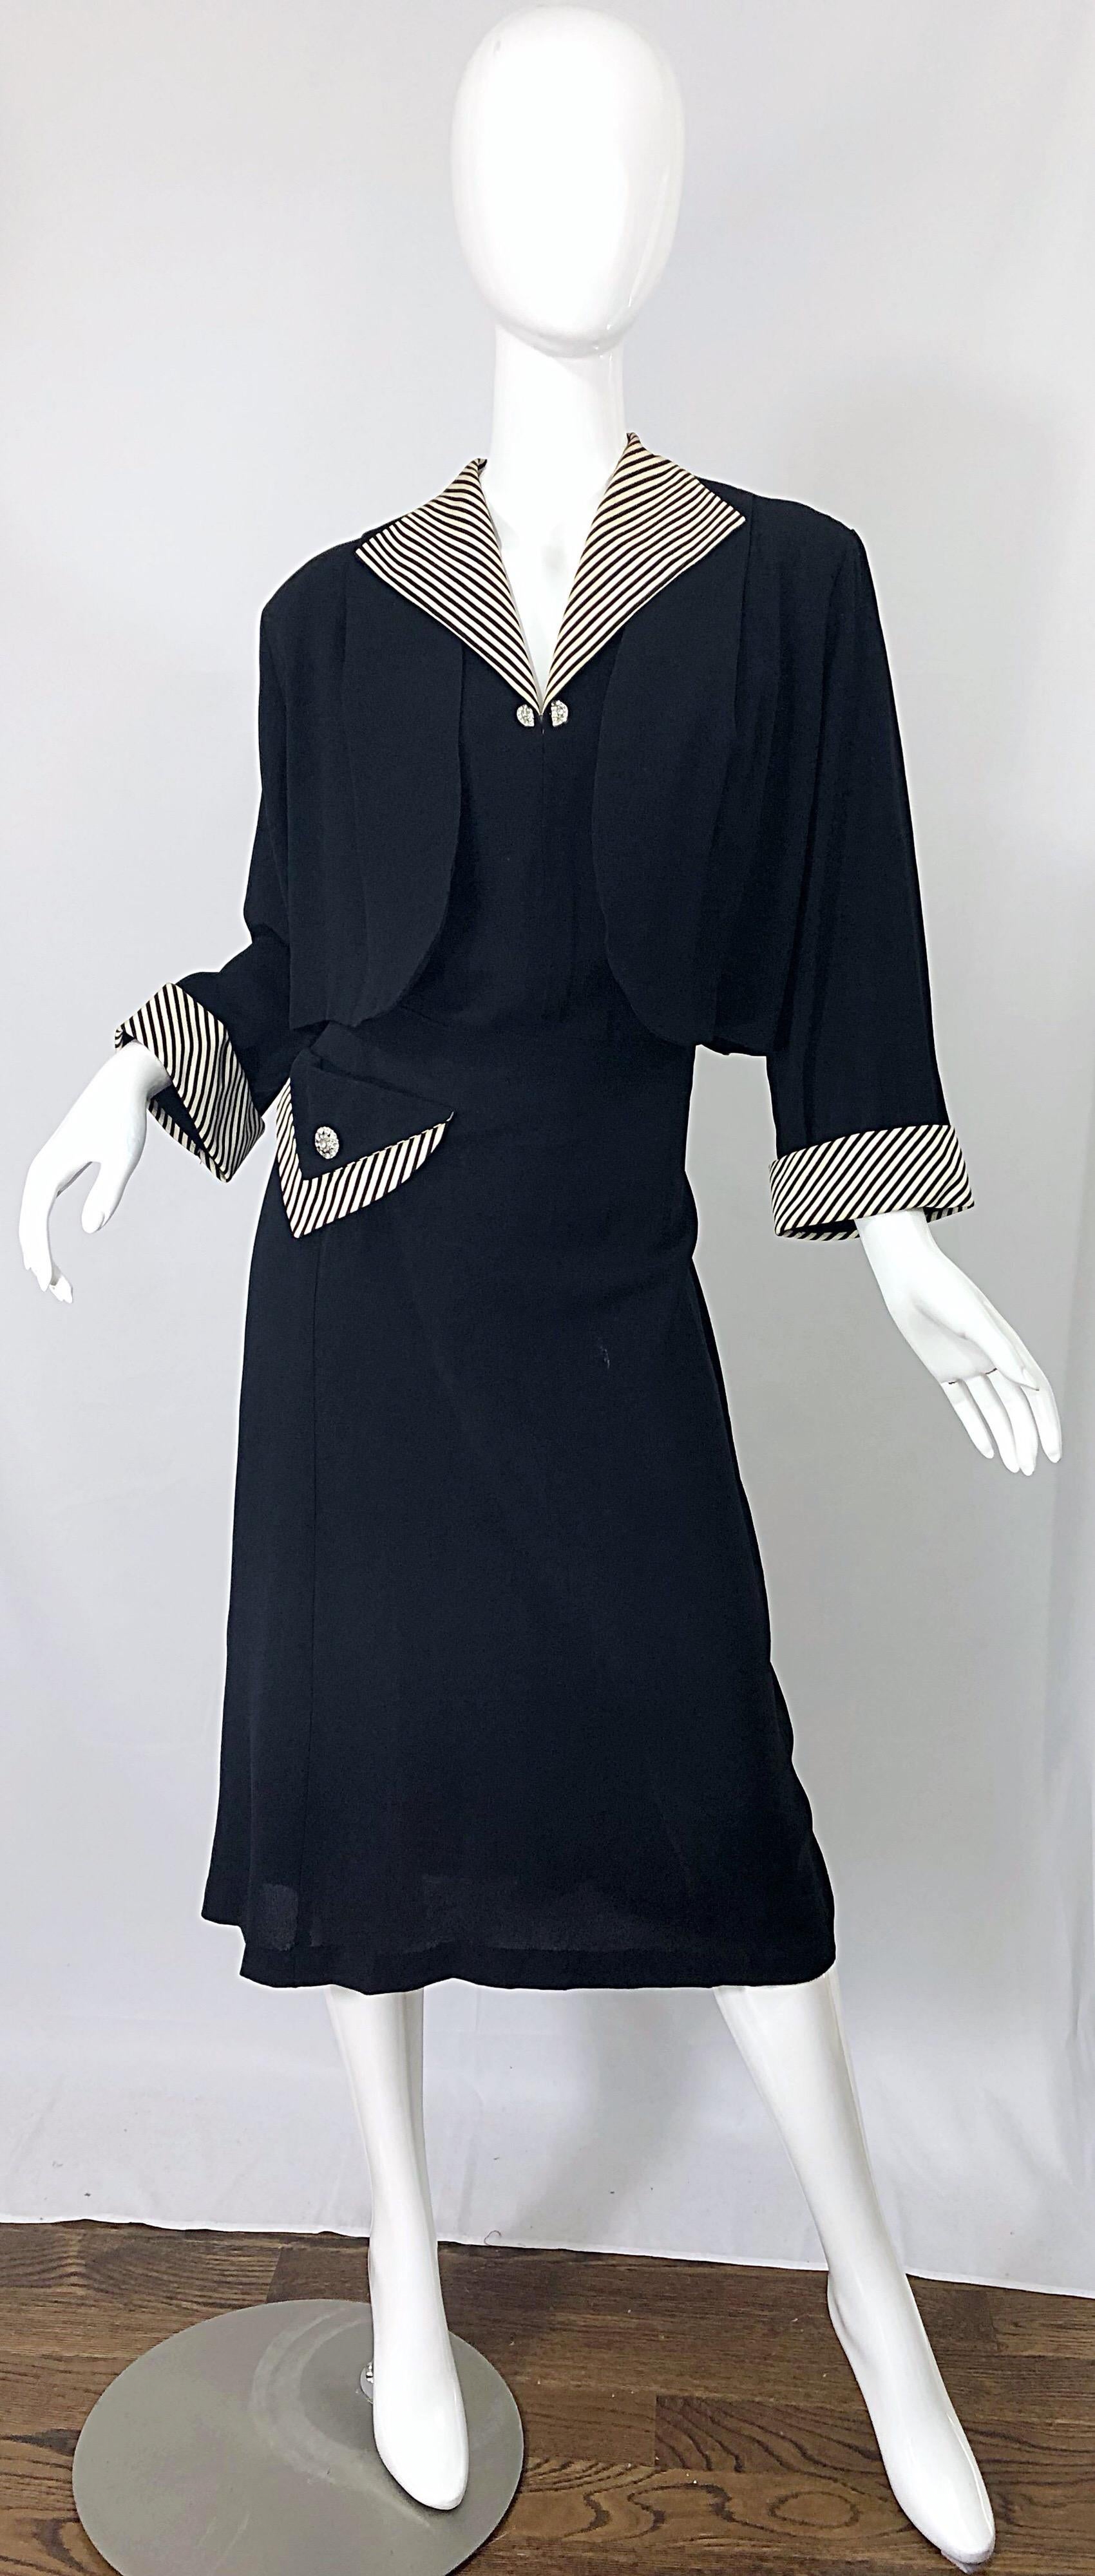 1940s plus size dresses